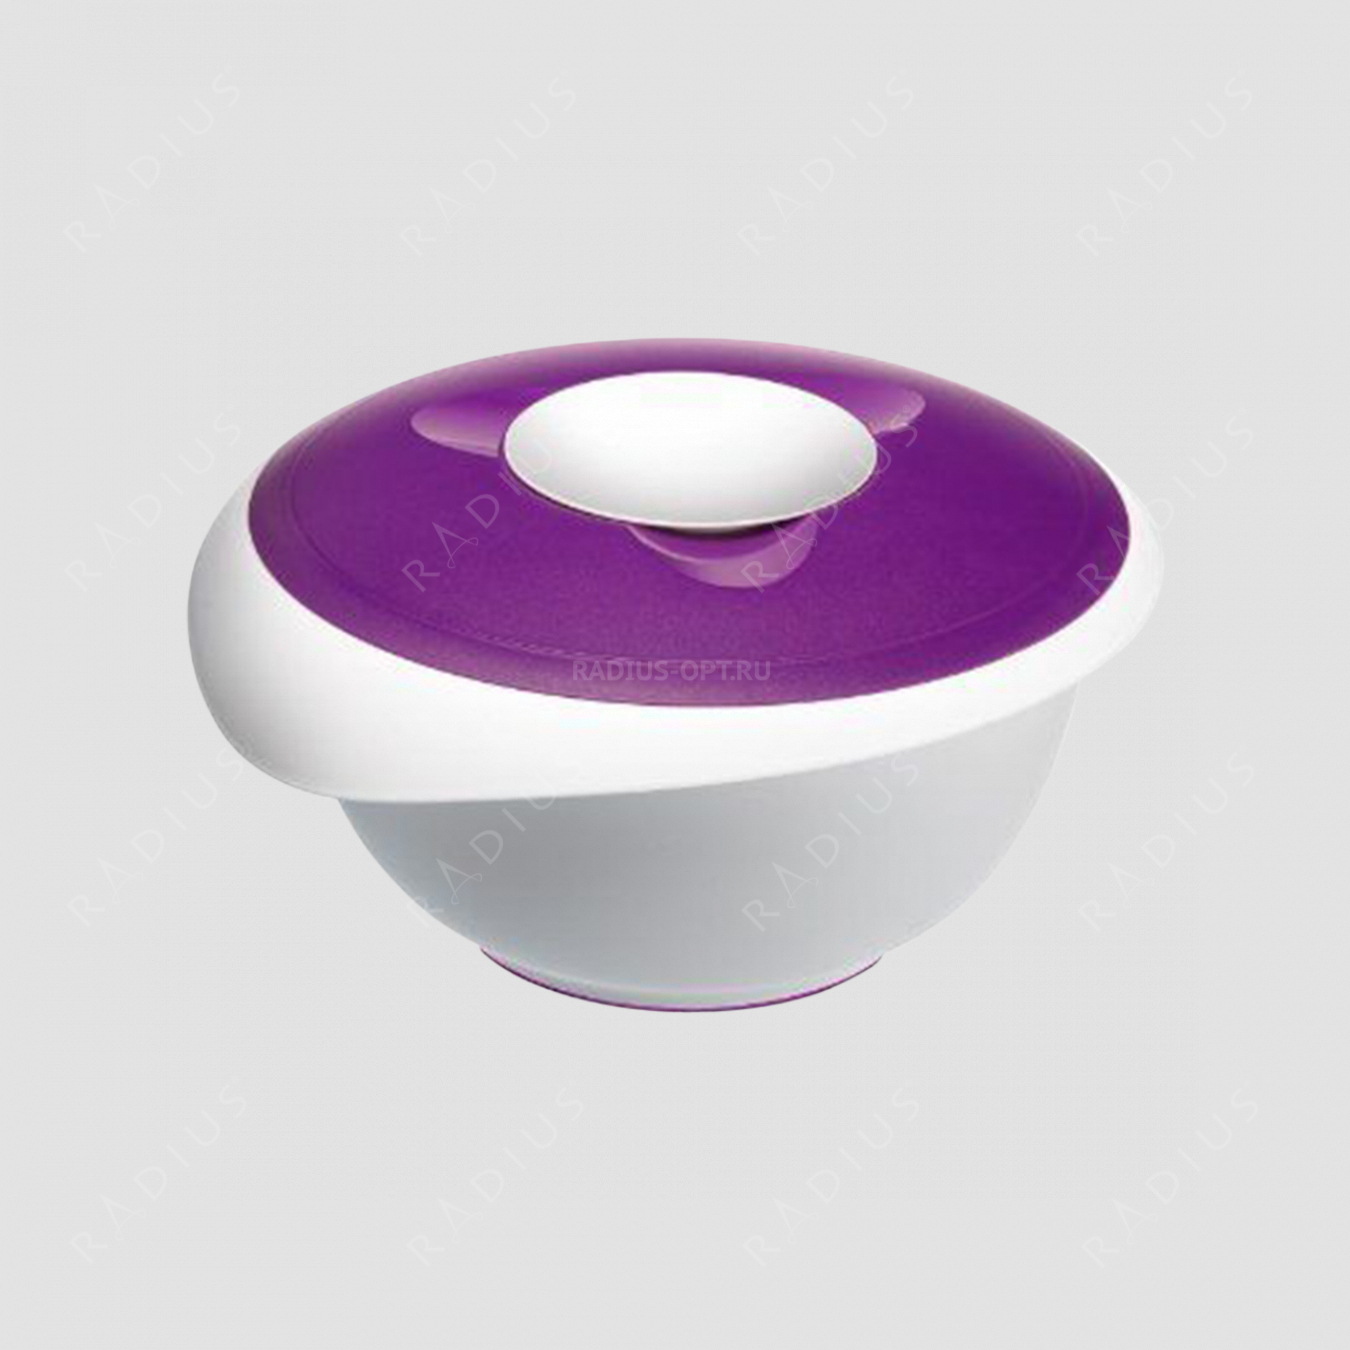 Миска для смешивания с 2-мя крышками 3,0 л., цвет фиолетовый, серия Baking, Westmark, Германия